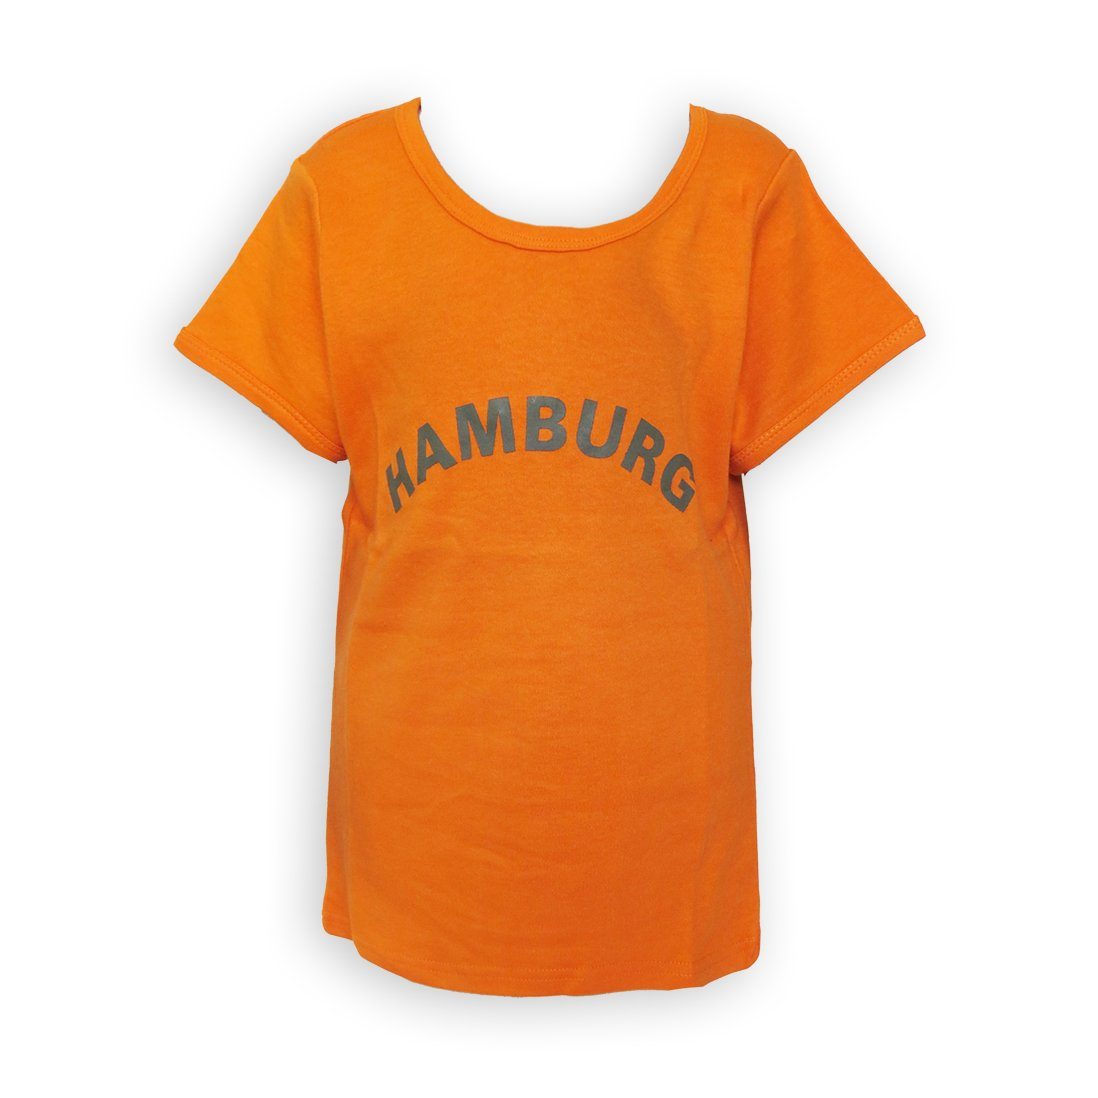 T-Shirt mit Sonia Top für Mädchen Hamburg Aufdruck Originelli orange Teens Shirt